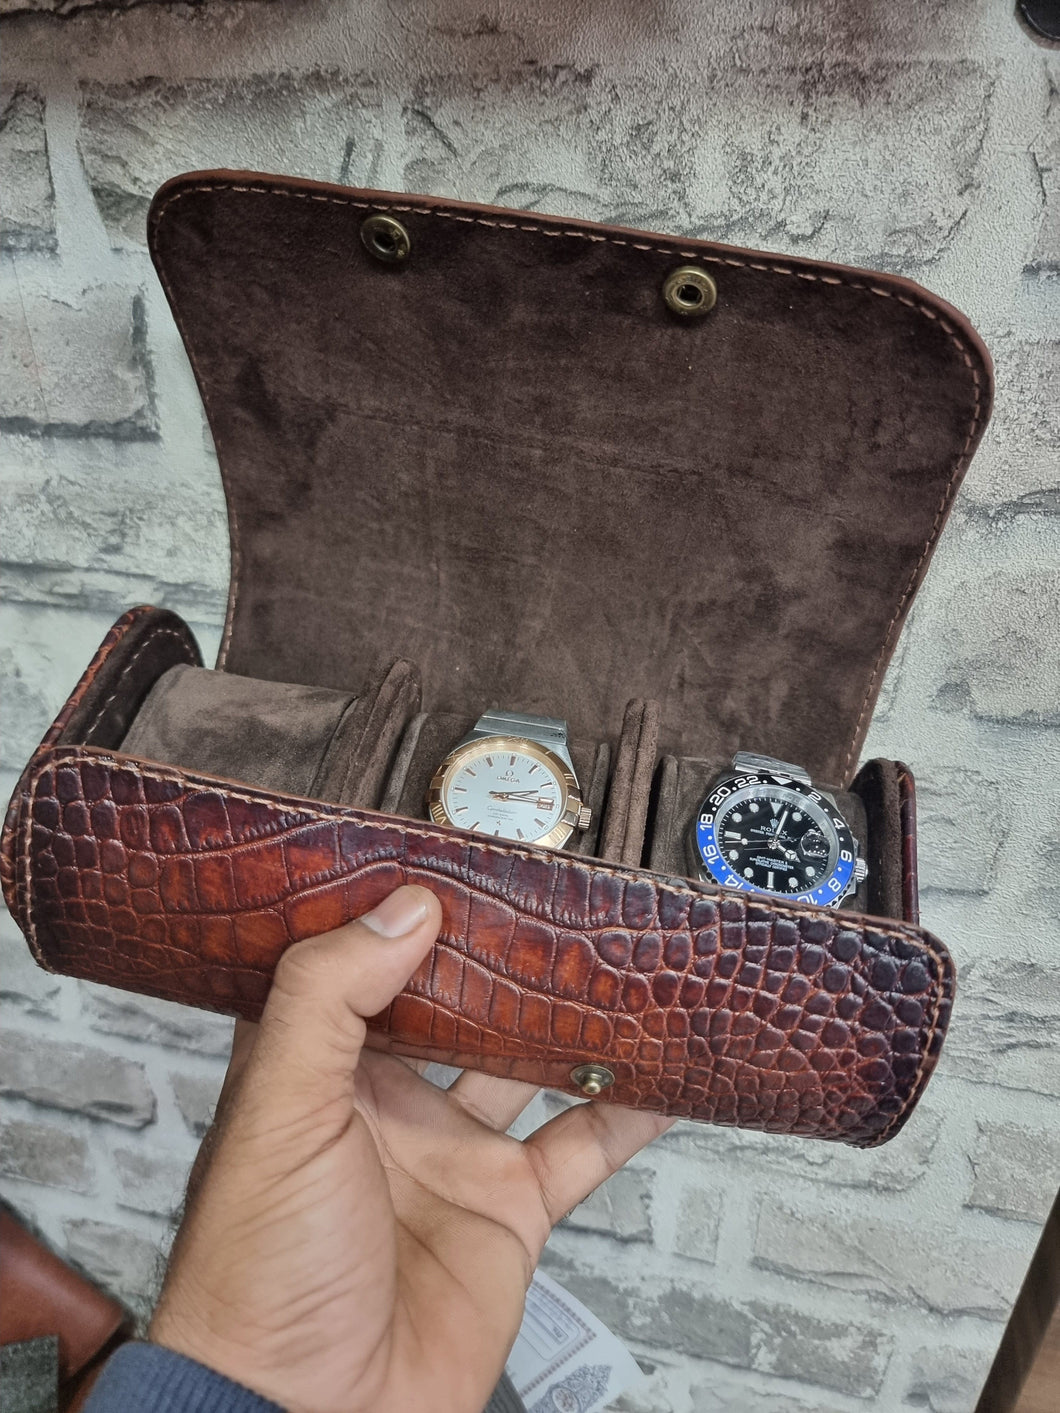 Indianleathercraft Watch Accessories Travel watch case